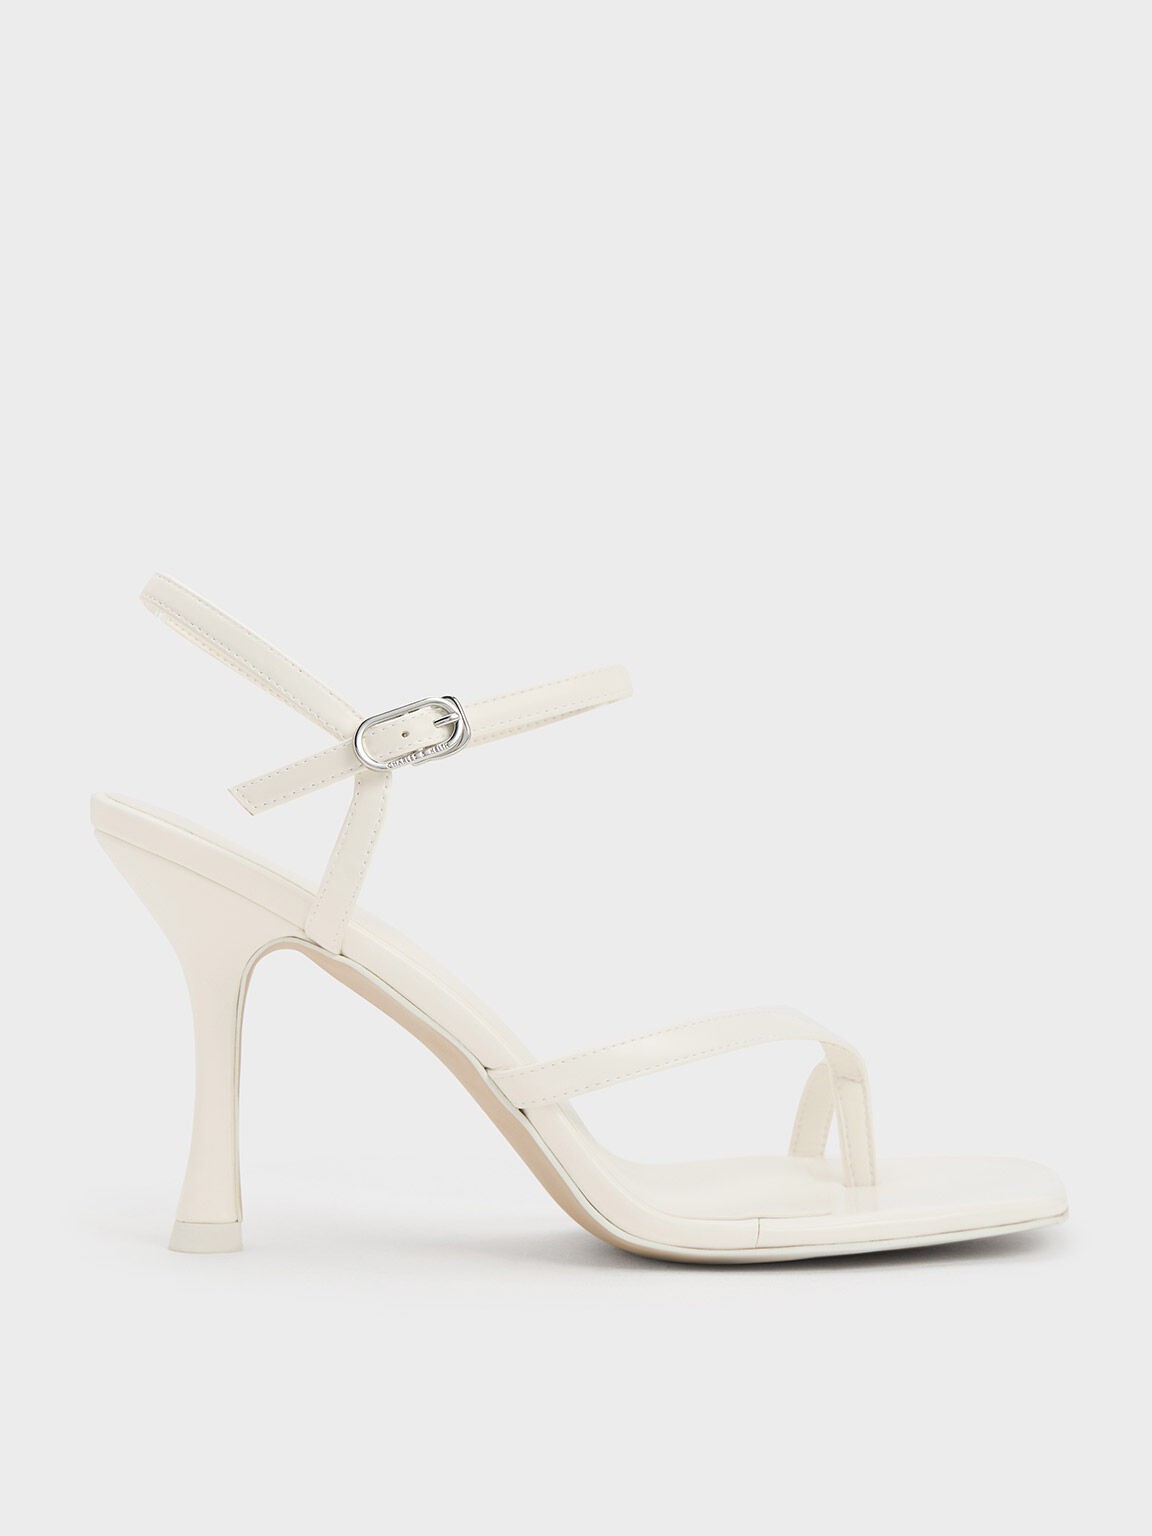 Elegant White Kitten Heel Sandals - Perfect for Summer